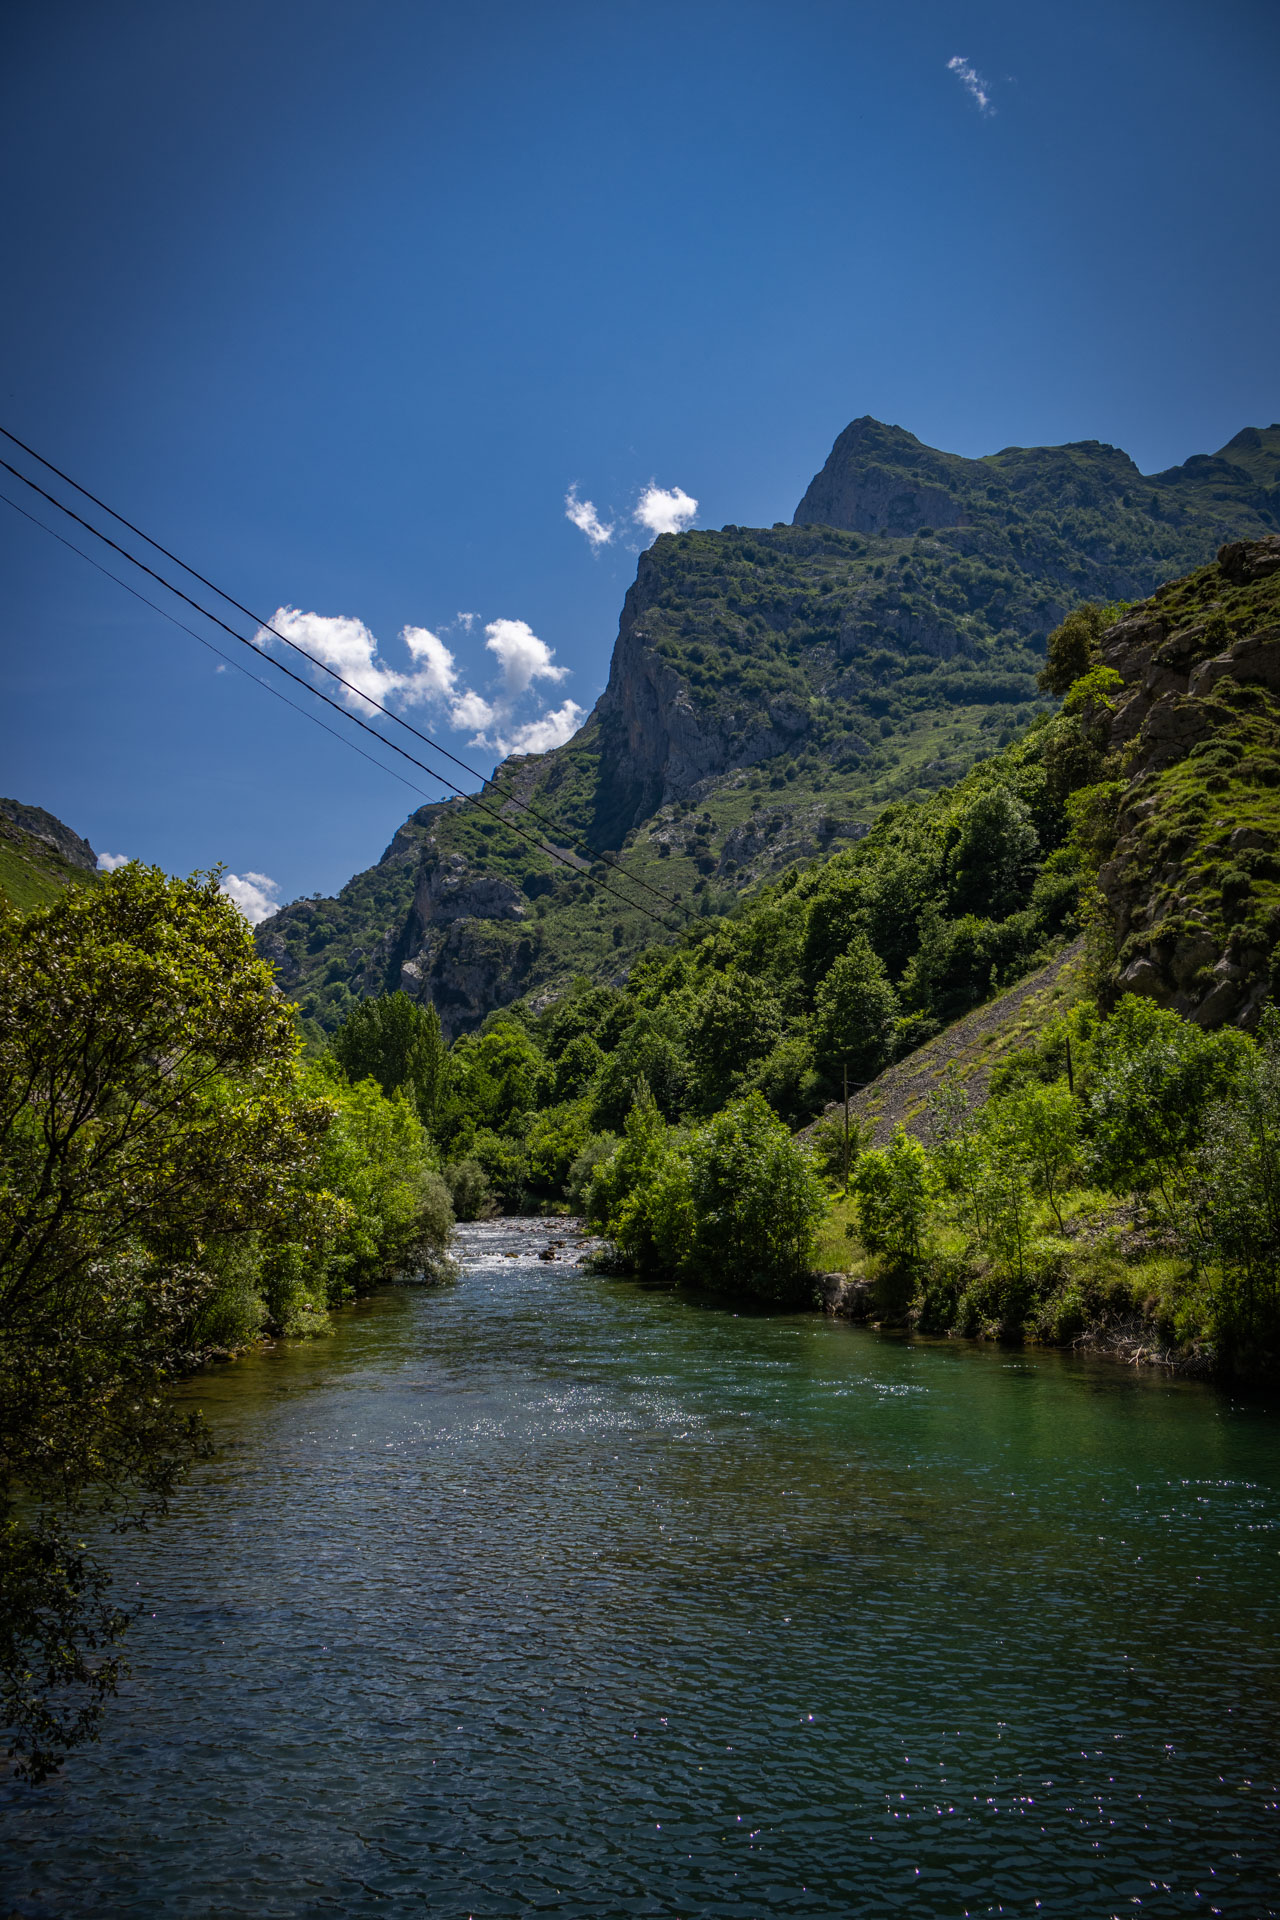 De rivier Cares stroomt rustig richting Caín, omring door groen.